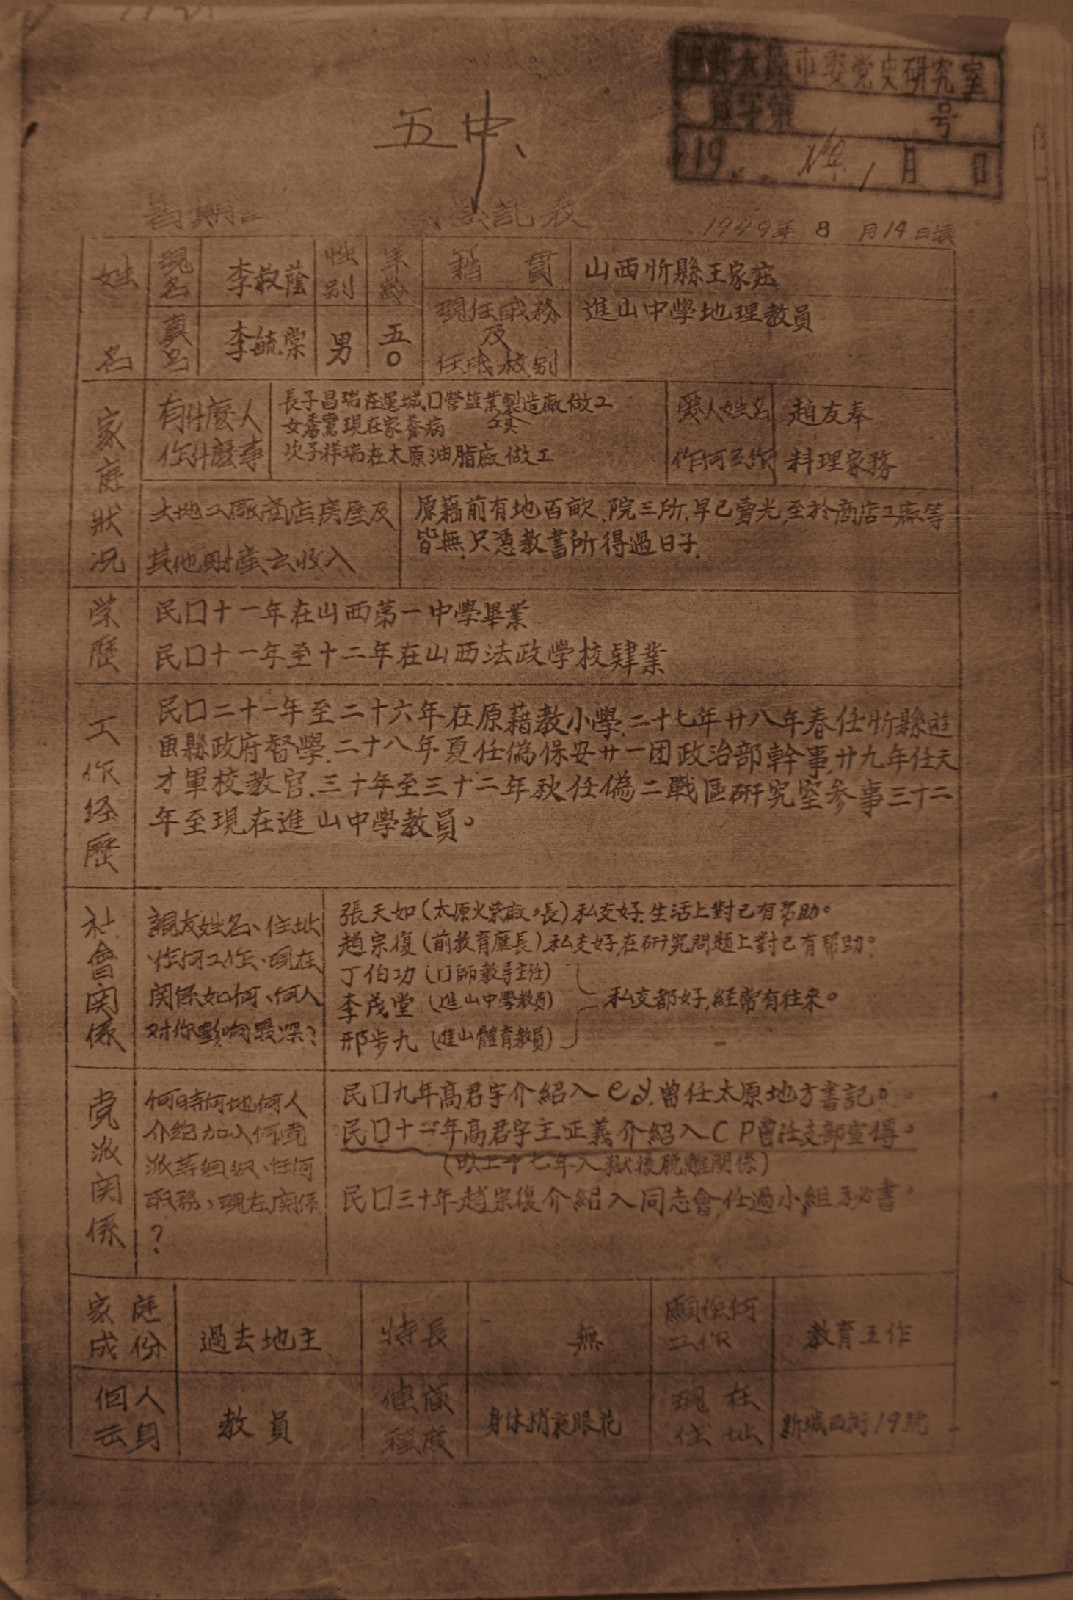 1949年8月李毓棠入黨時間及擔任職務的記述